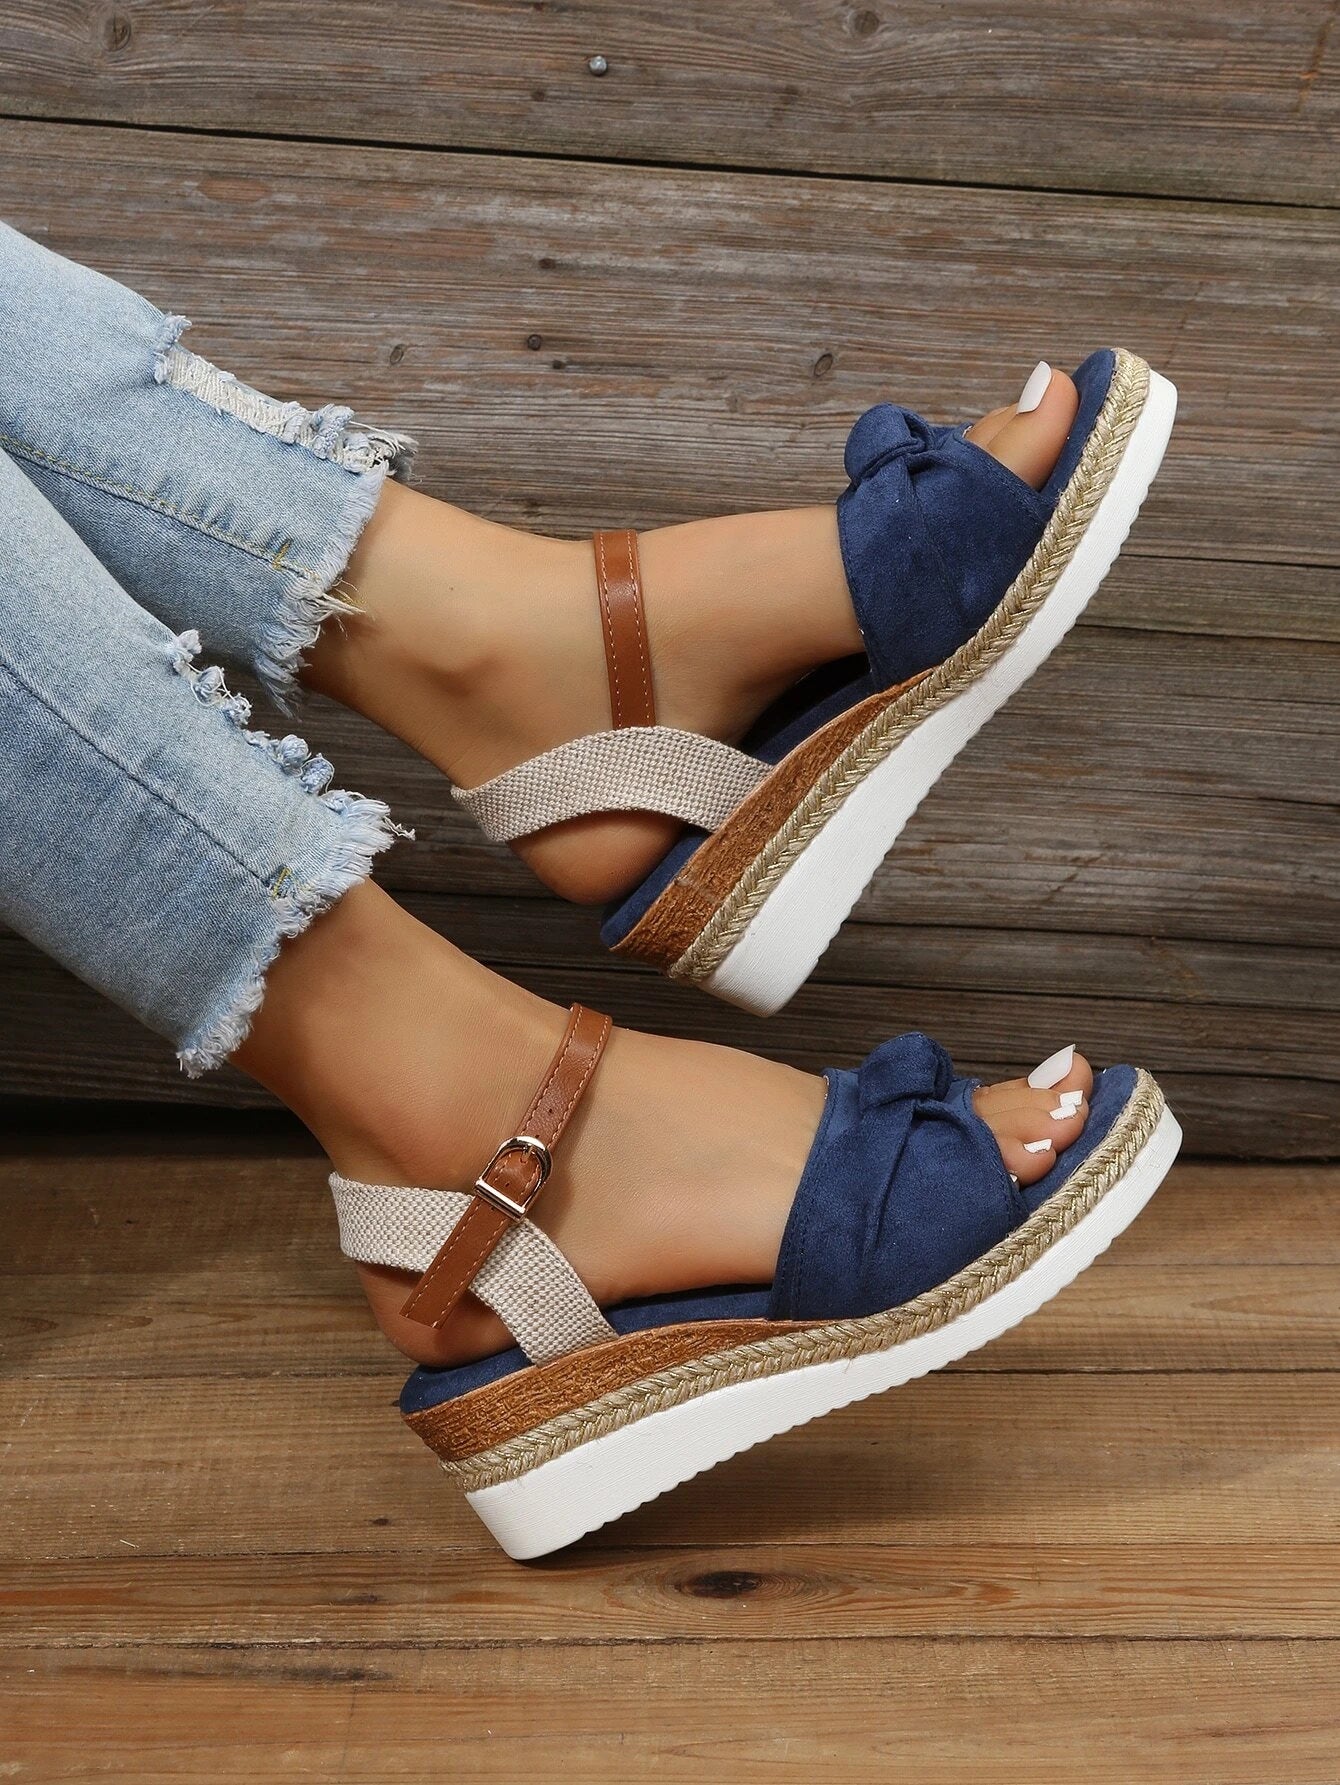 Sandálias femininas leves com detalhes de laço, sandálias perfeitas para as férias de verão